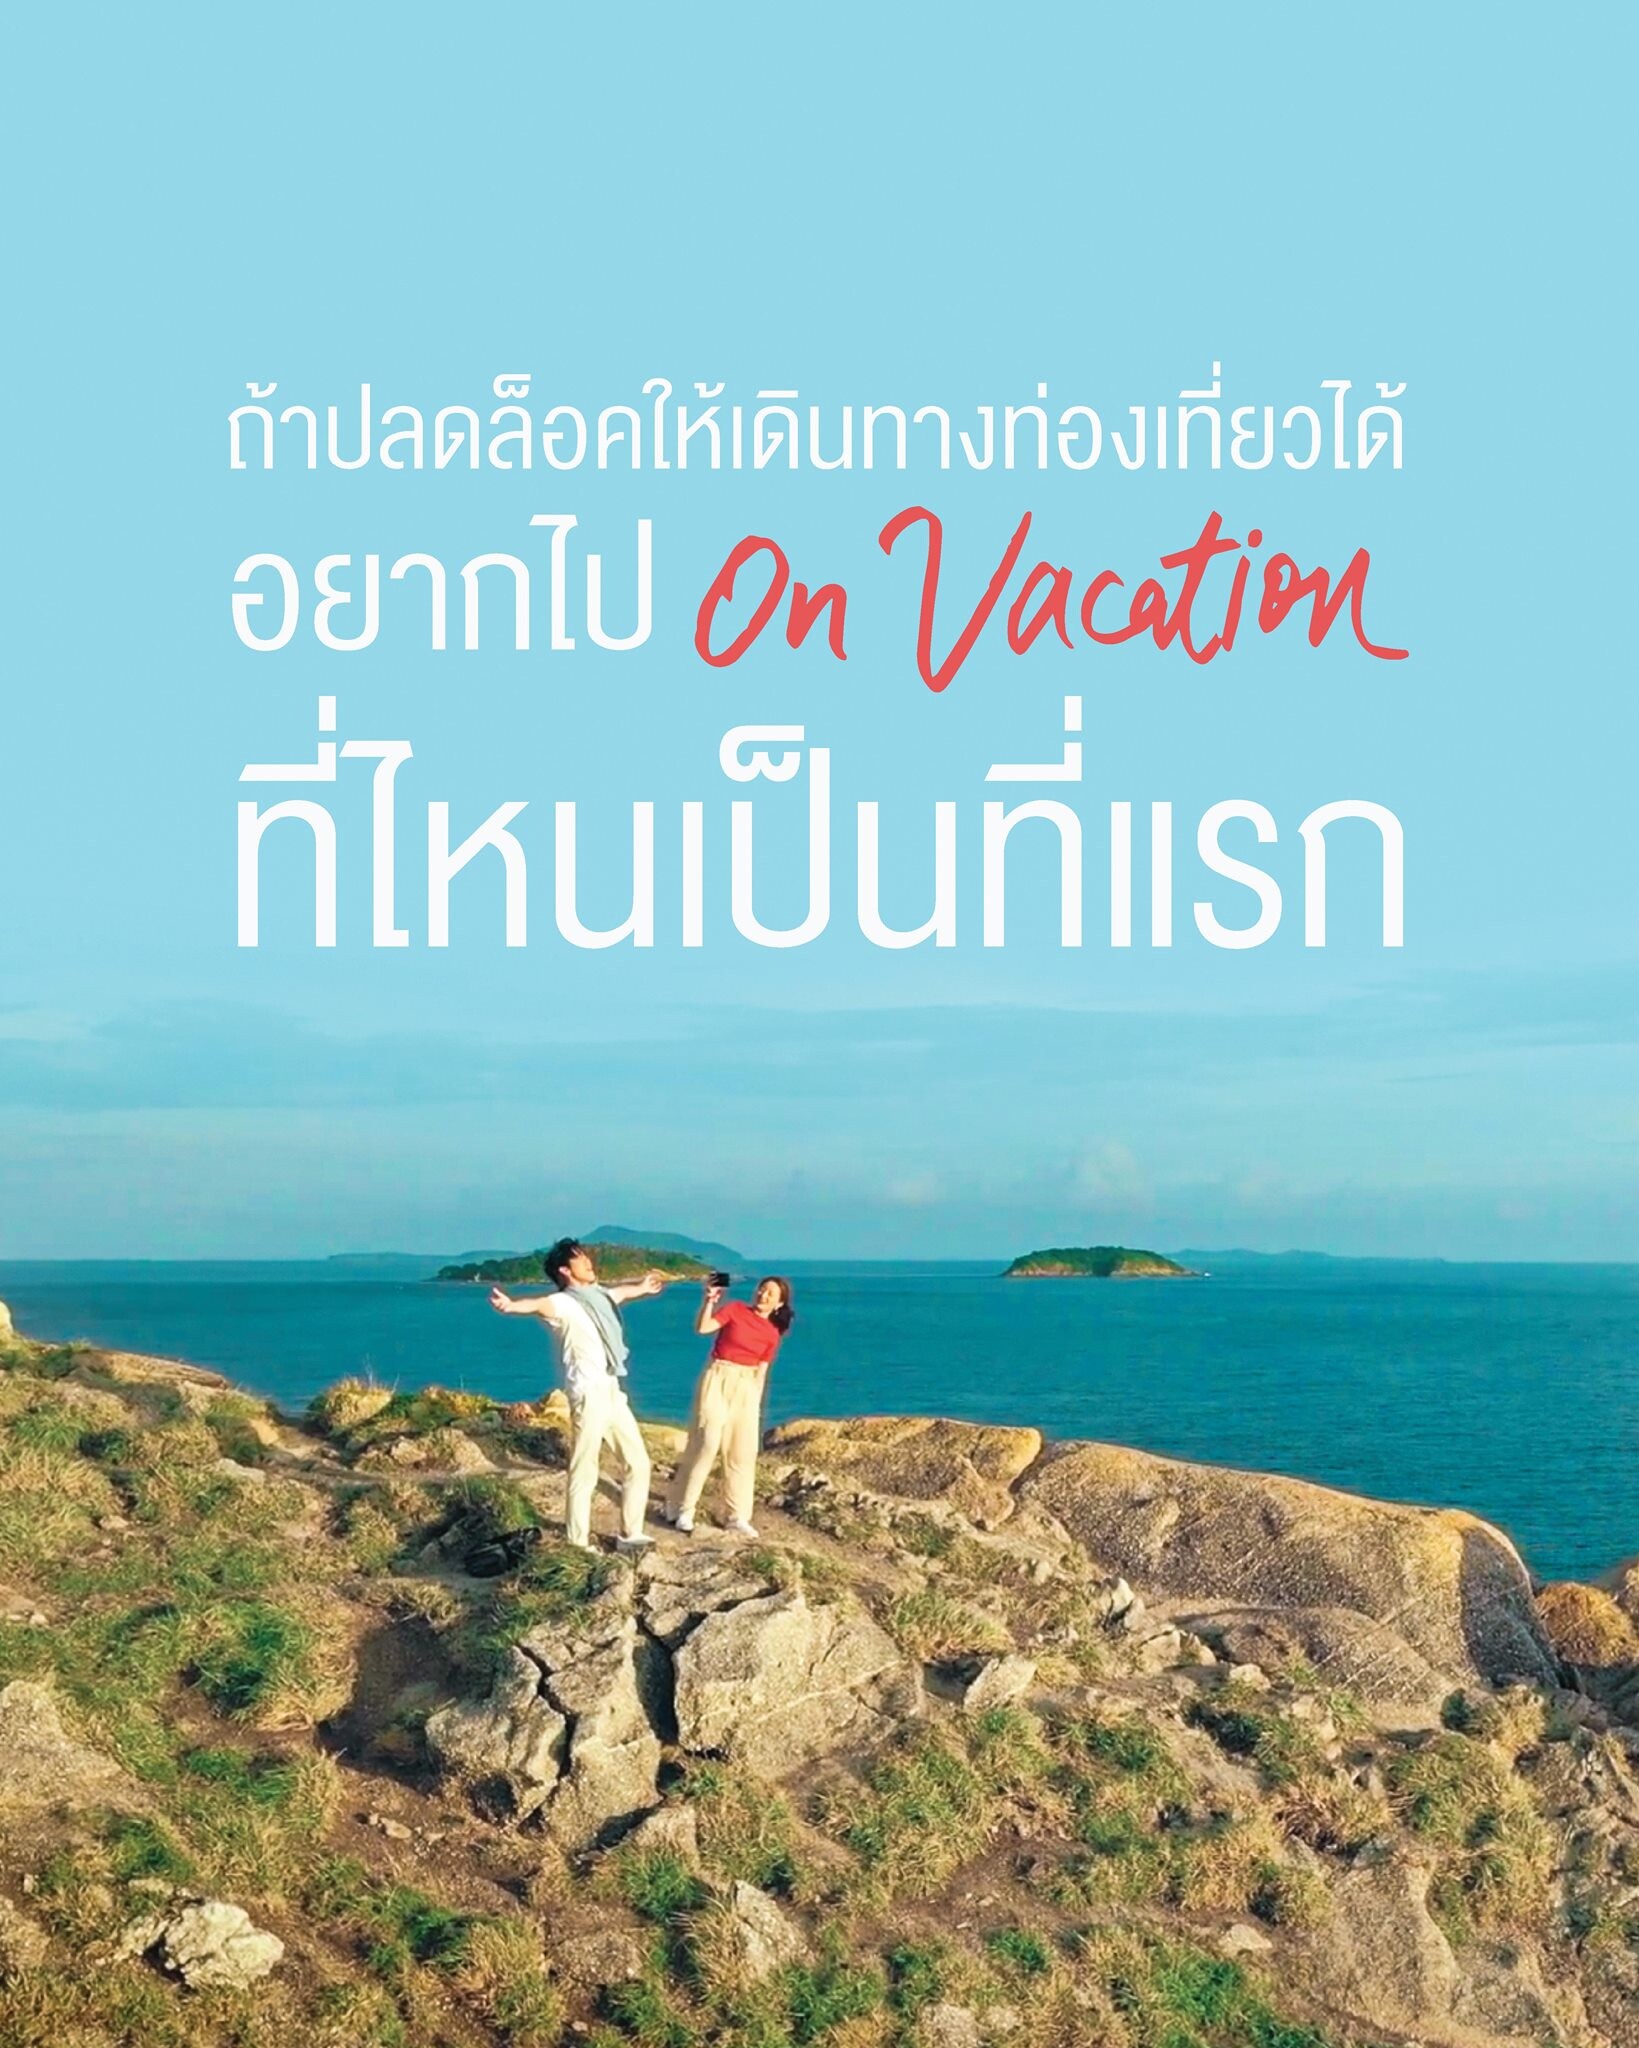 ททท.ขอมอบความสุขให้คนไทย ผ่าน Mini Story "อร Vacation" นำโดย ต่อ ธนภพ -อิ้งค์ วรันธร กับโมเม้นต์สุดจิ้น เตรียมโดนตกกันทุกคน